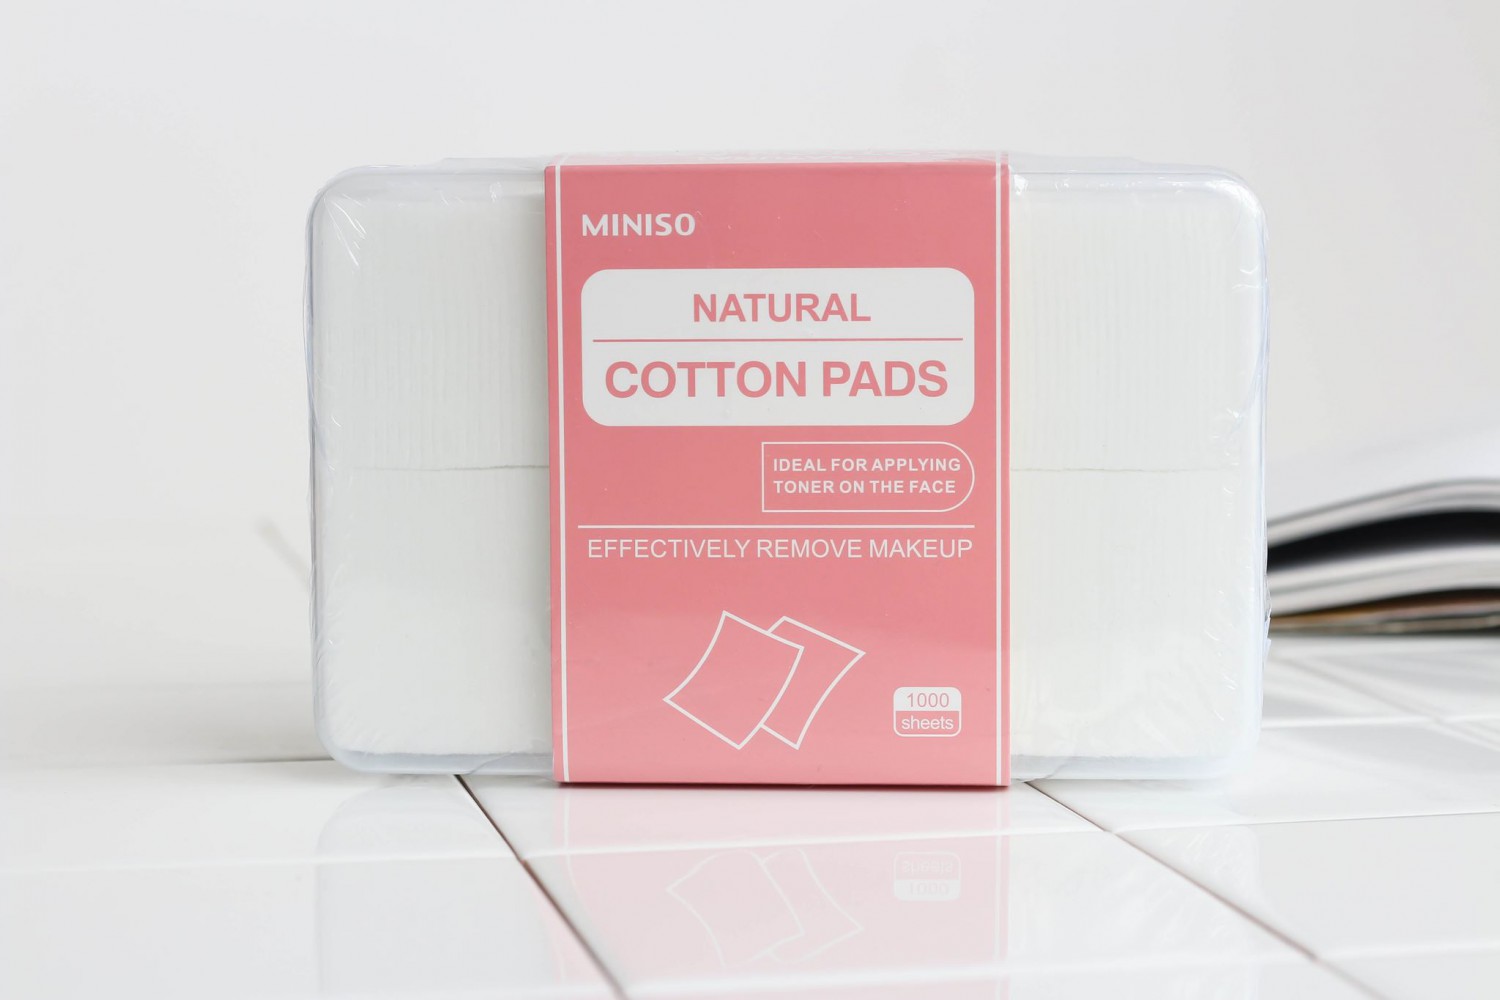 Bong Tay Trang Miniso Natural Cotton Pads